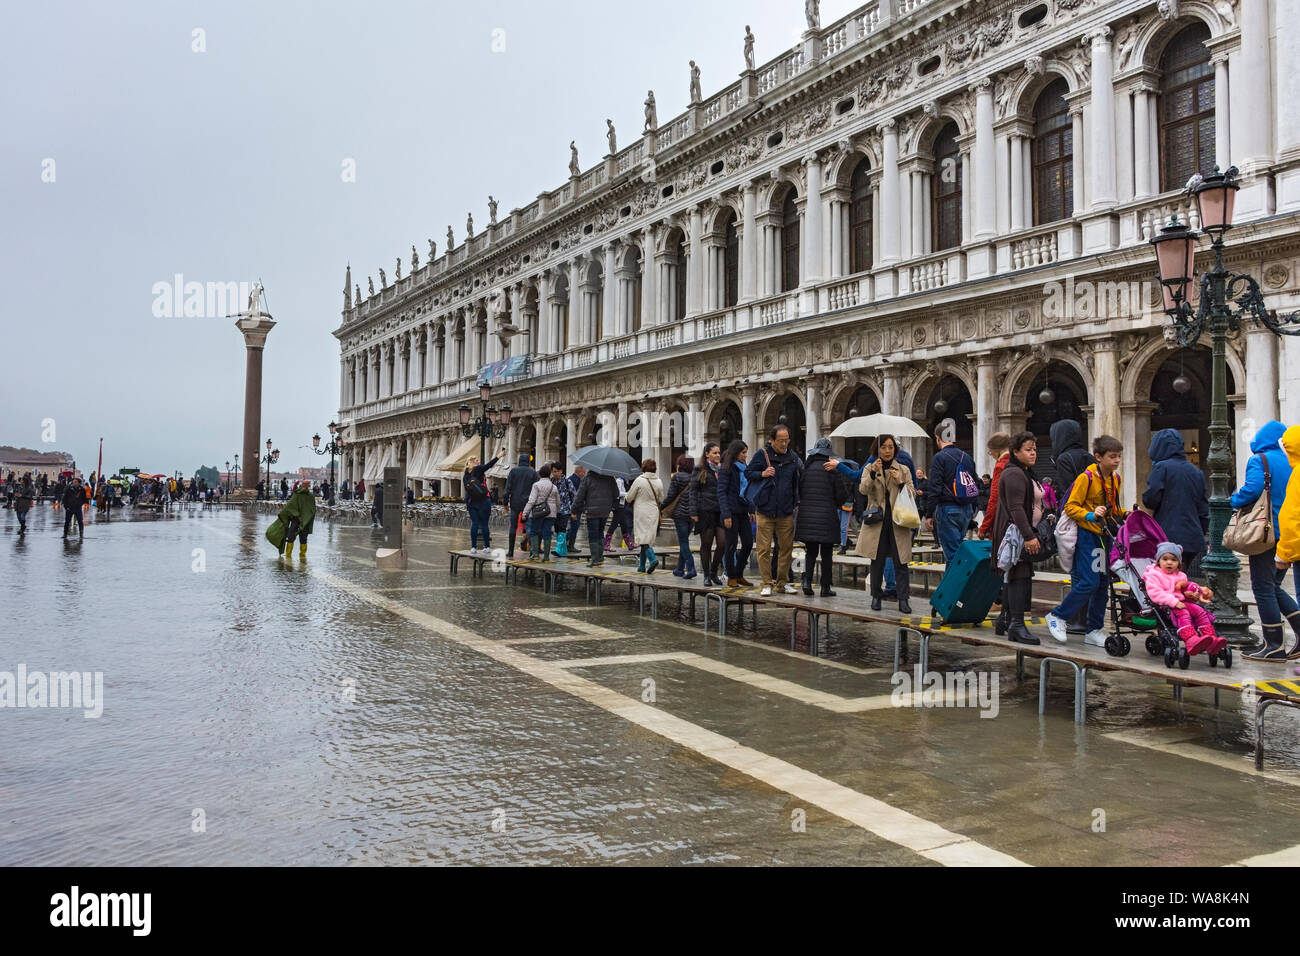 Menschen zu Fuß auf erhöhten Plattformen während der Acqua Alta (hohe Wasser) Ereignis in der Biblioteca Gebäude, Piazzetta di San Marco, Venedig, Italien Stockfoto